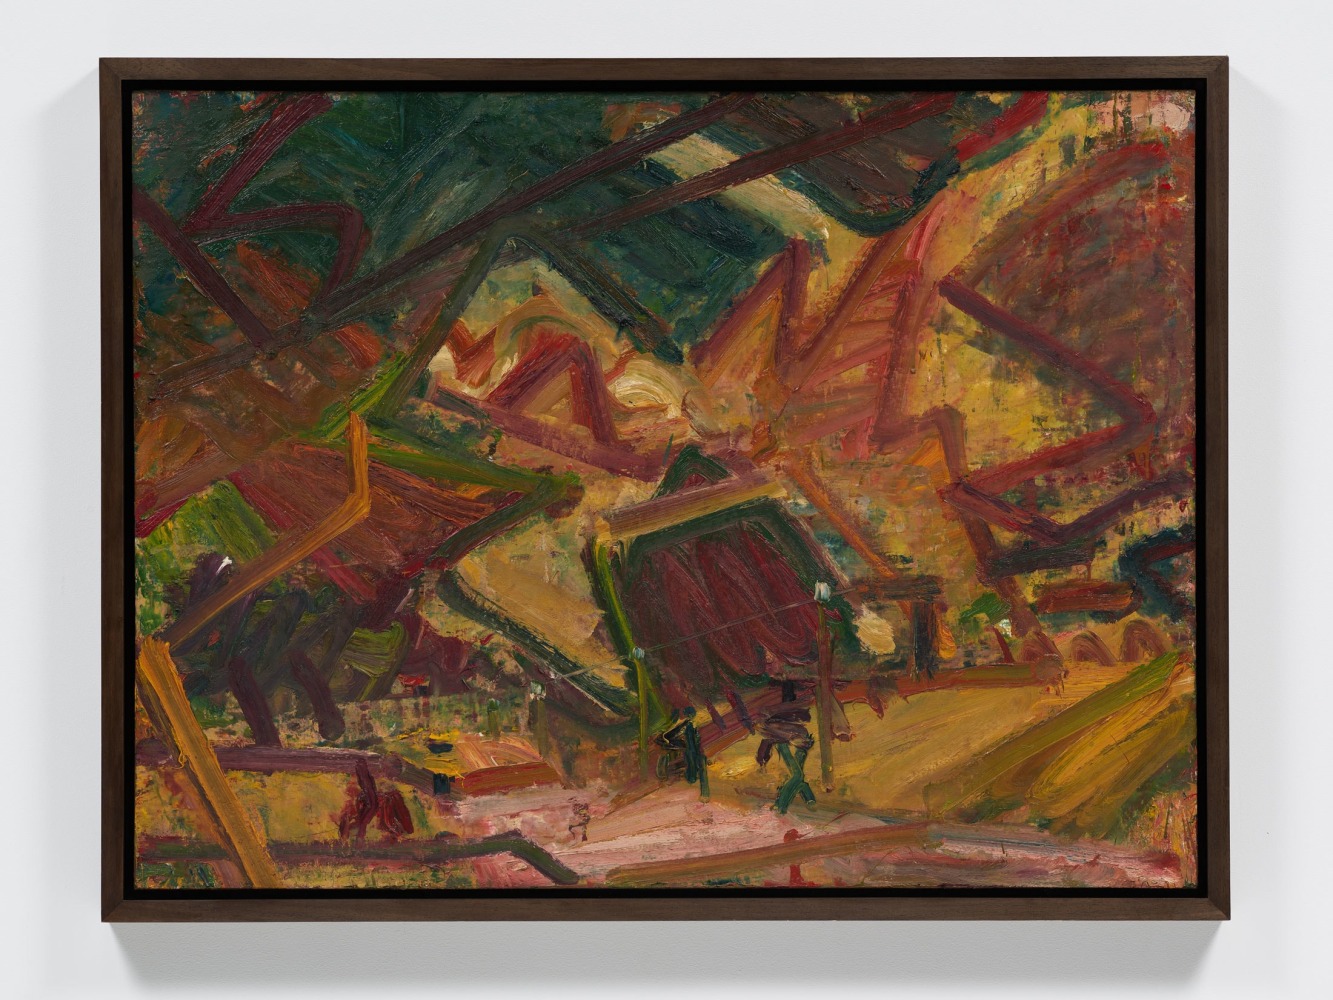 Frank Auerbach
Primrose Hill, 1978
Oil on board
45 x 60 inches
(114.3 x 152.4 cm)

Private Collection